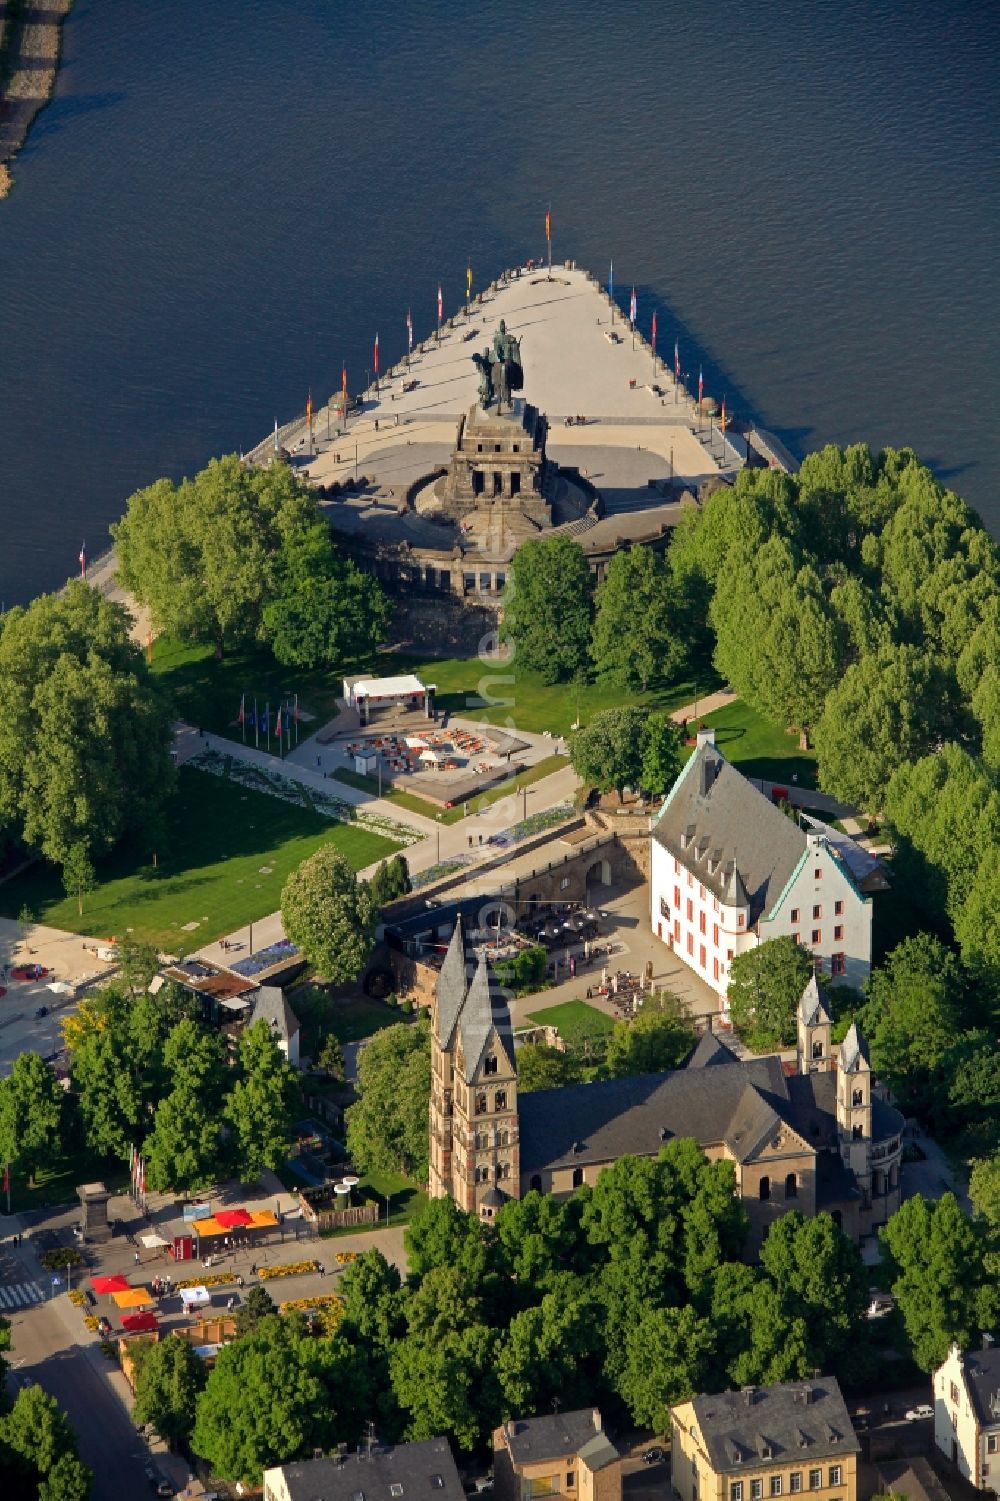 Luftbild Koblenz - Deutsches Eck in Koblenz im Bundesland Rheinland-Pfalz